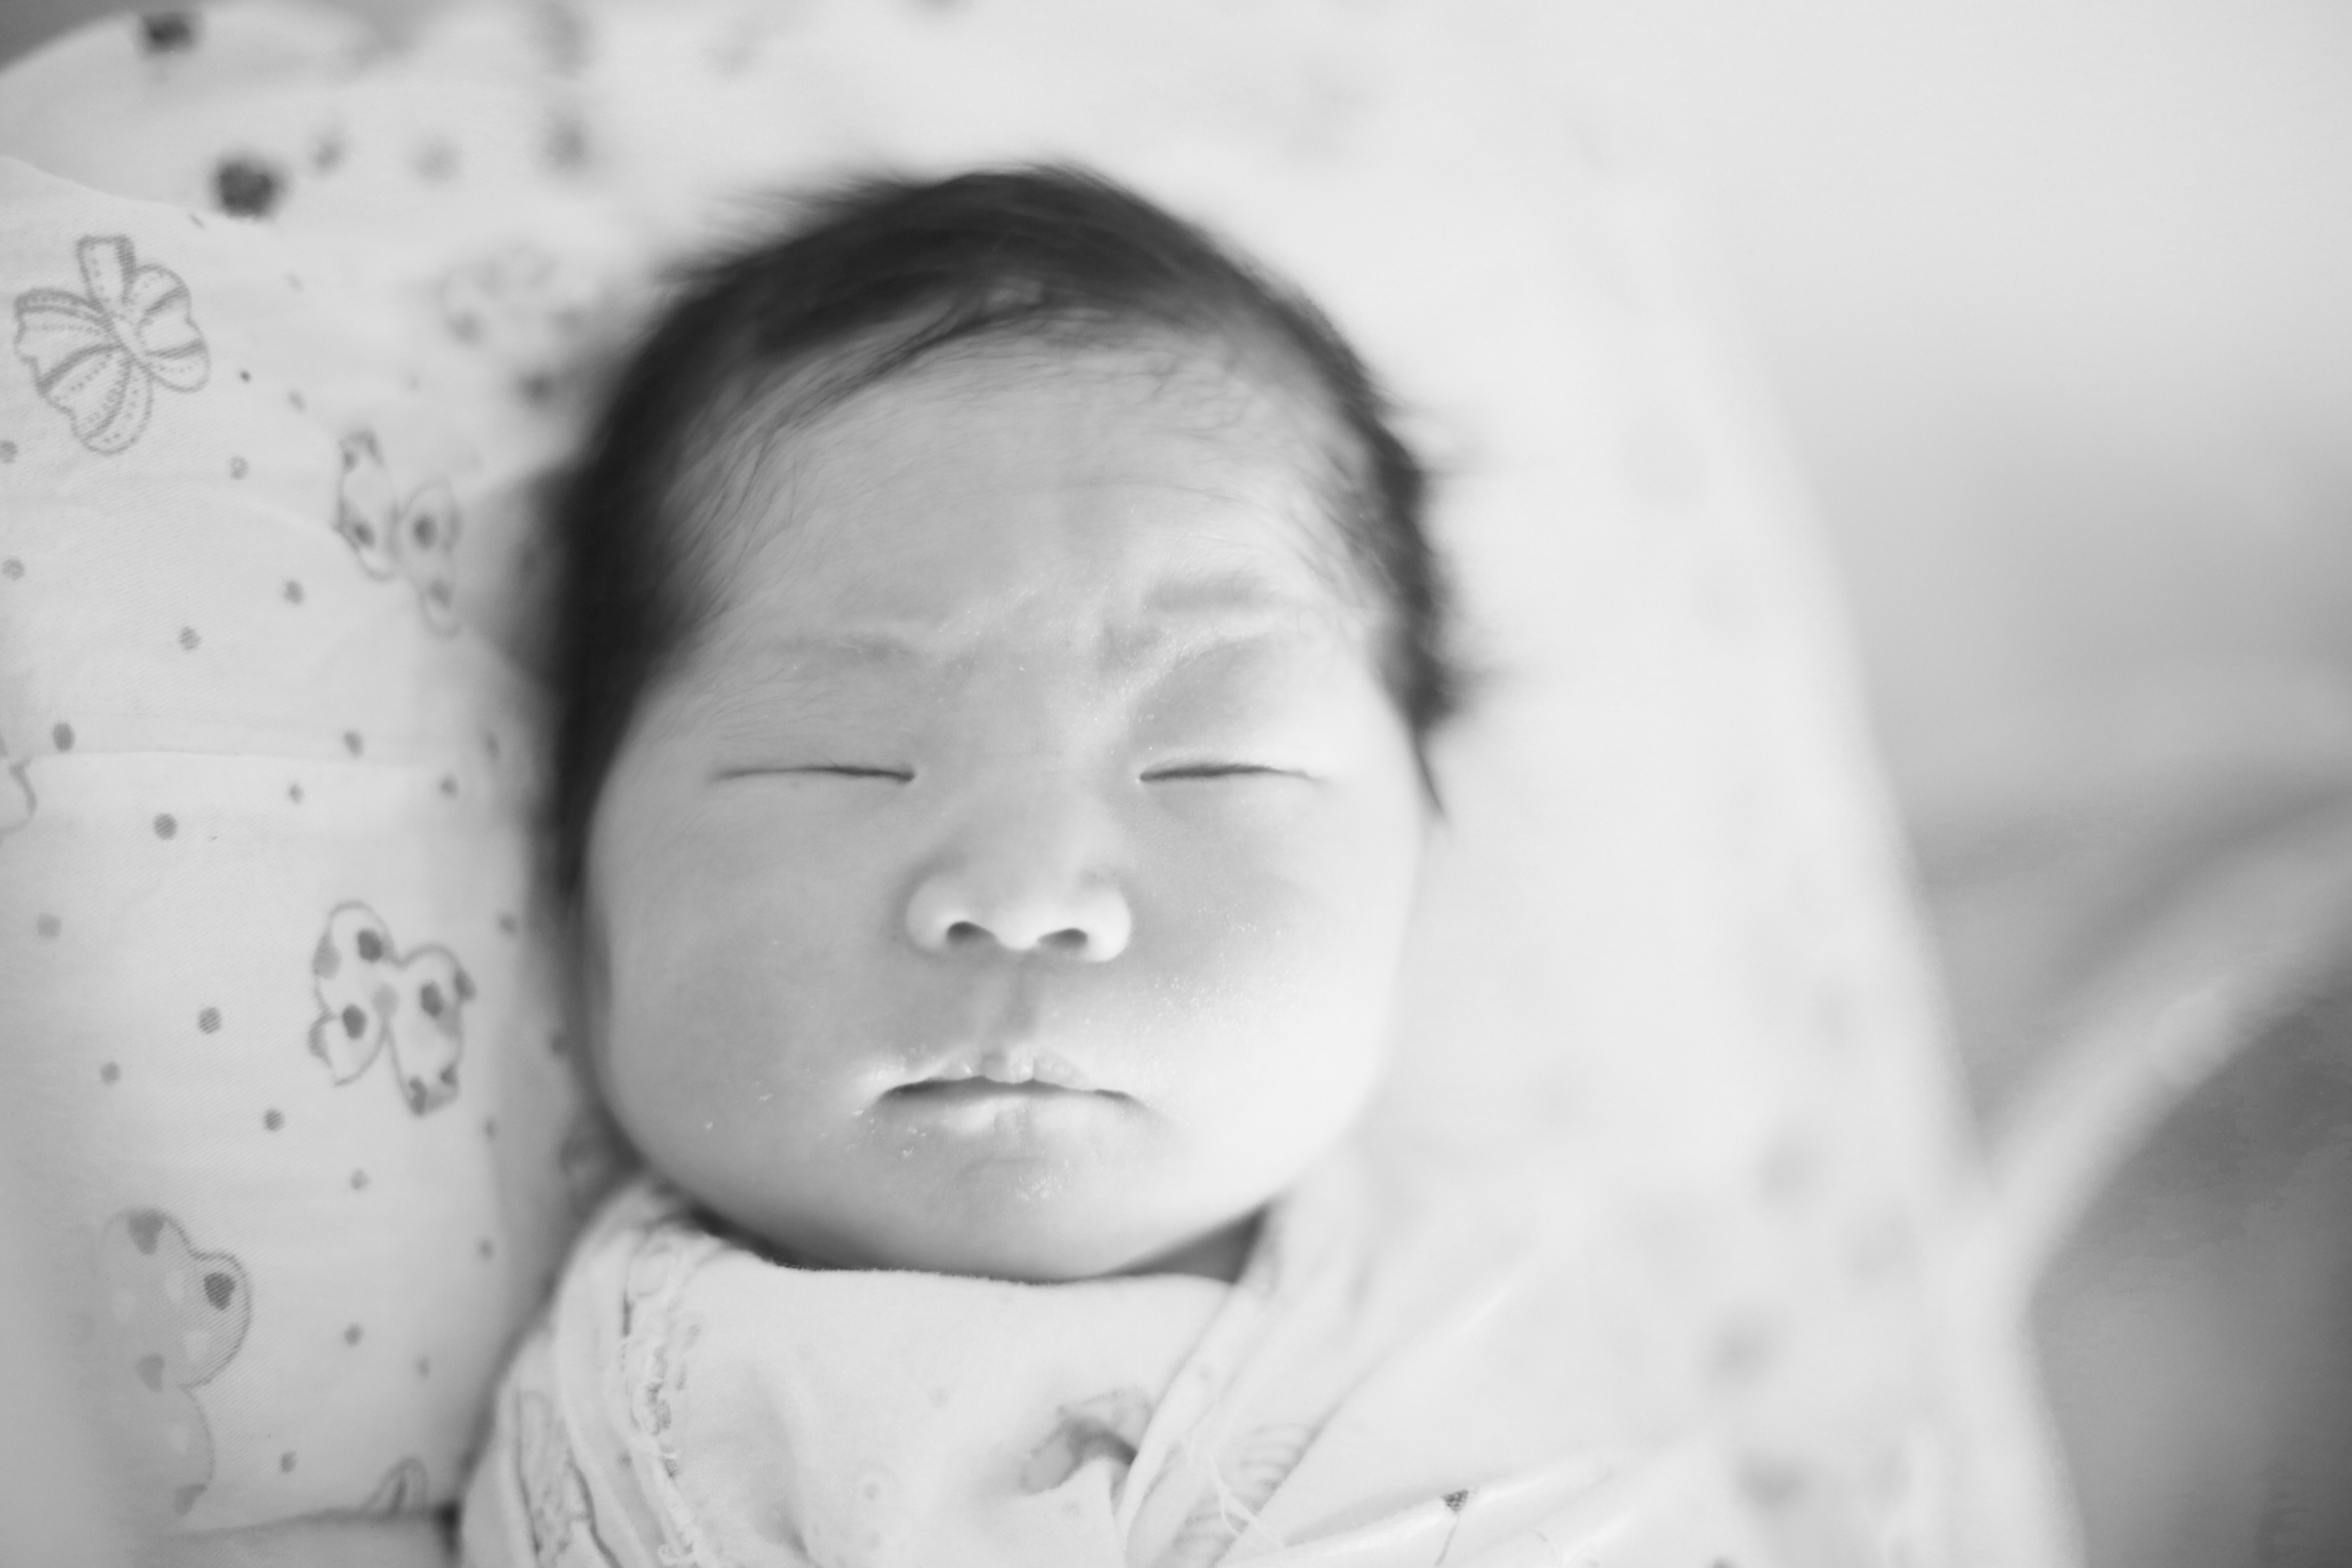 Newborn Sleep and Feeding Schedule